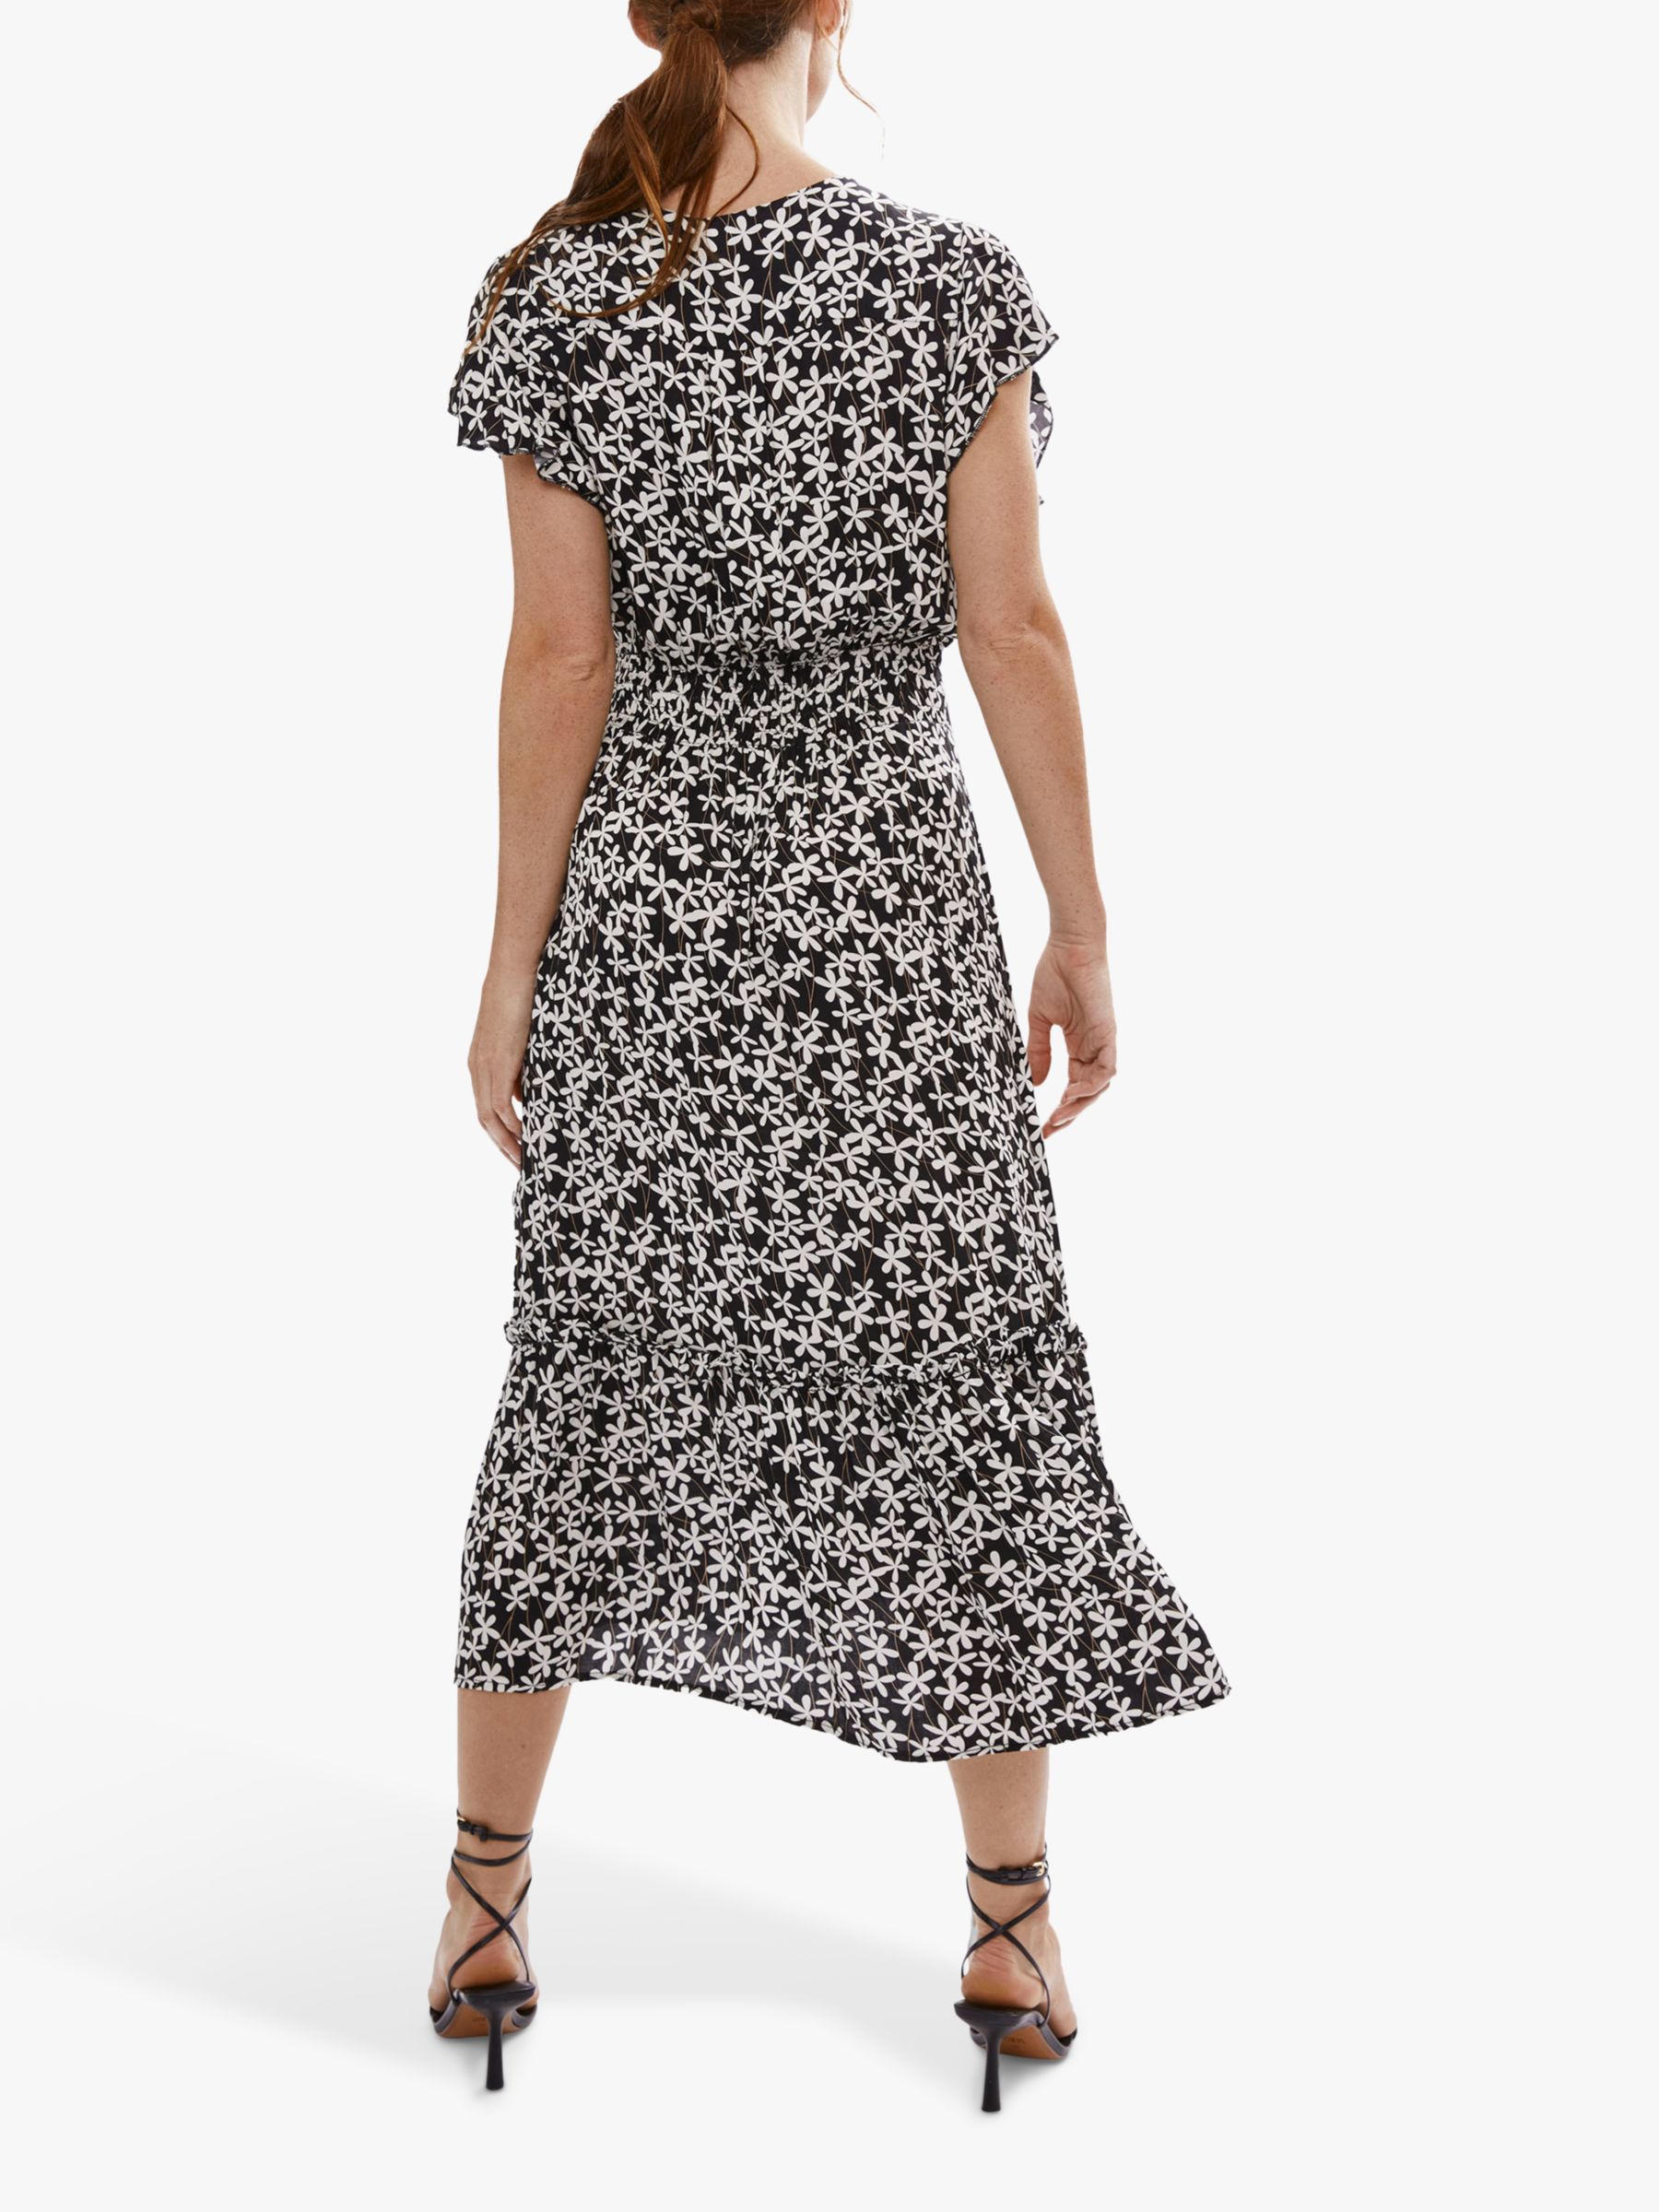 James Lakeland V-neck Ruffle Sleeve Daisy Print Midi Dress, Black/Cream, 16